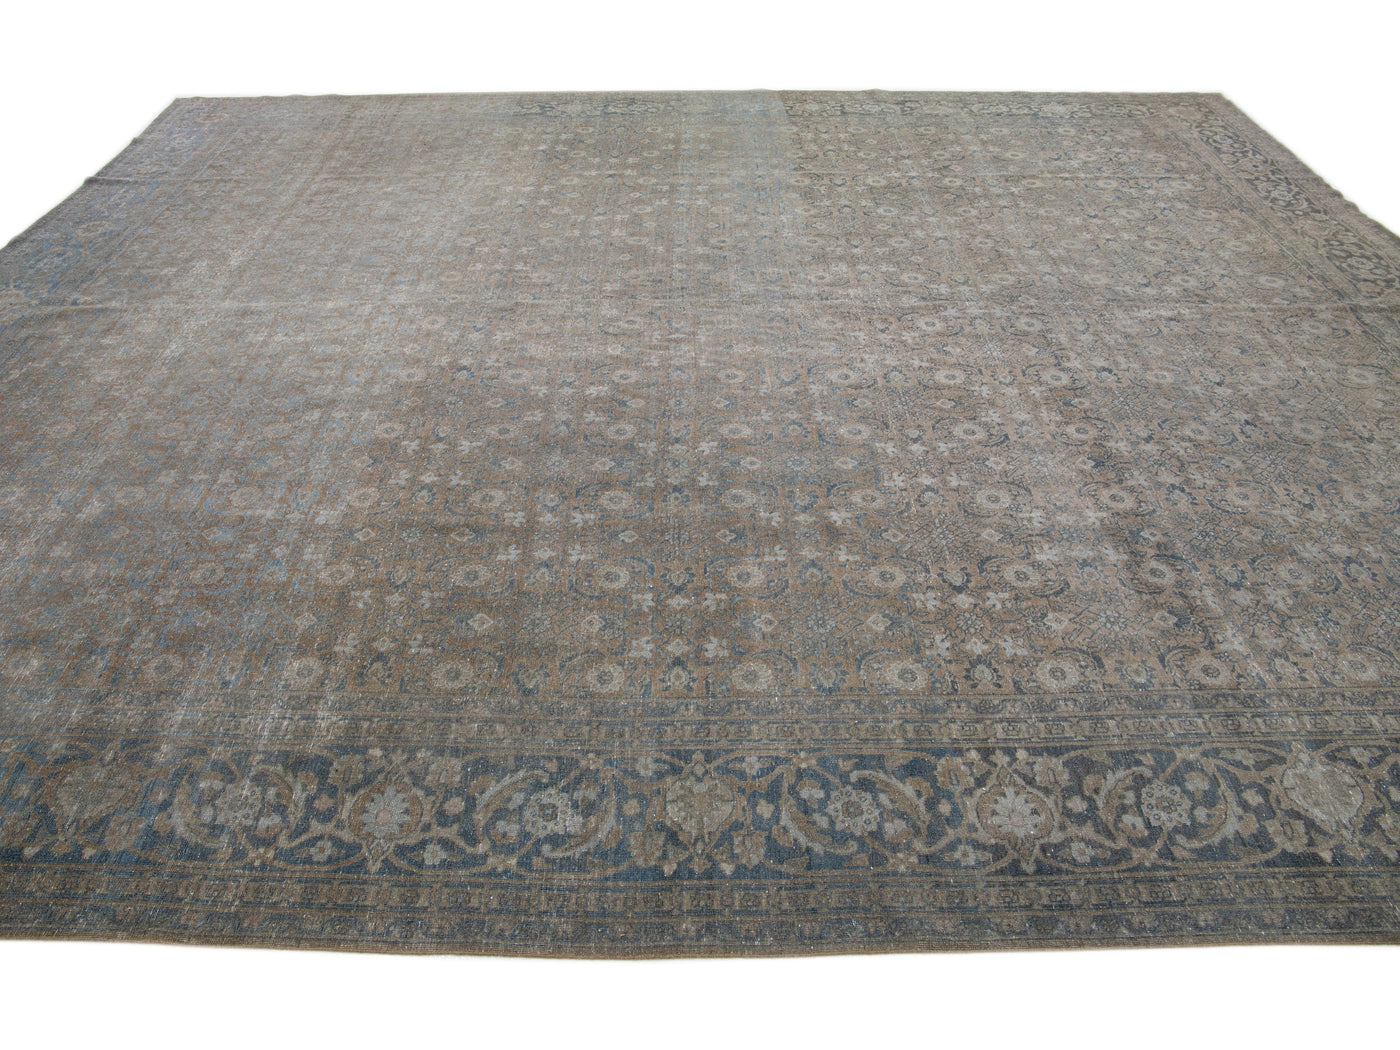 Antique Tabriz Wool Rug 12 X 15